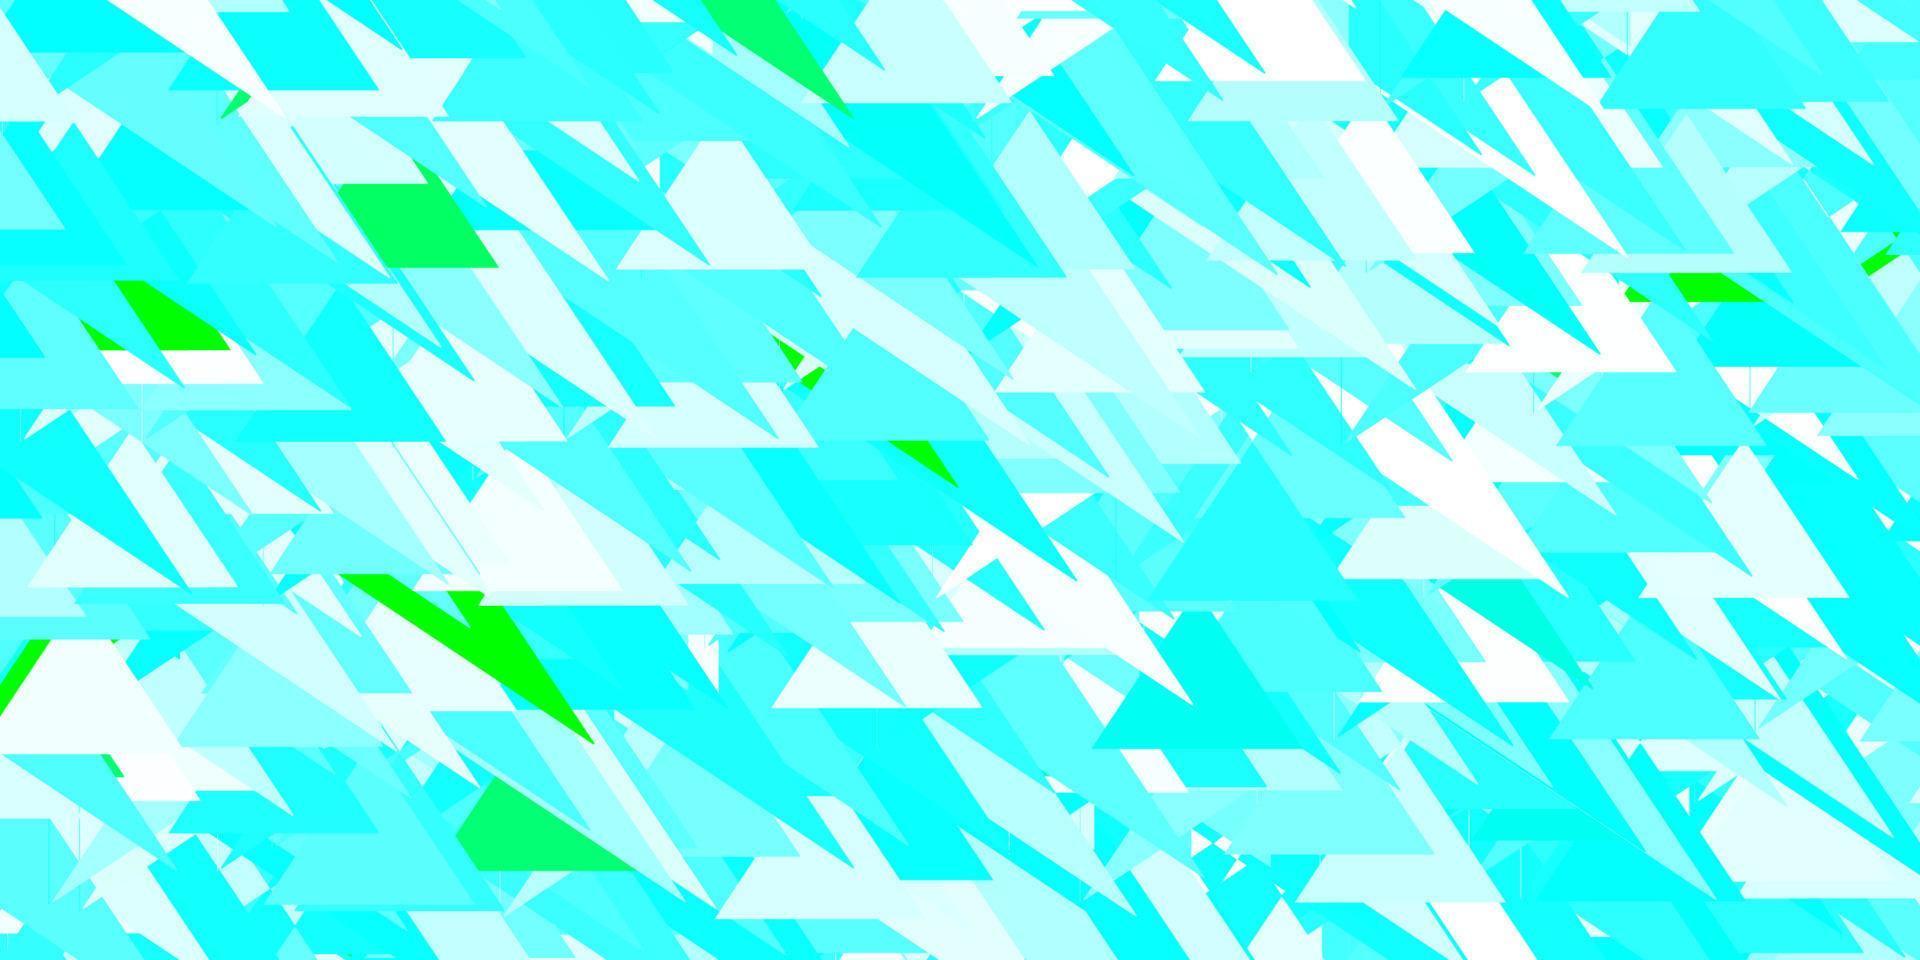 ljusblå, grön vektormall med triangelformer. vektor